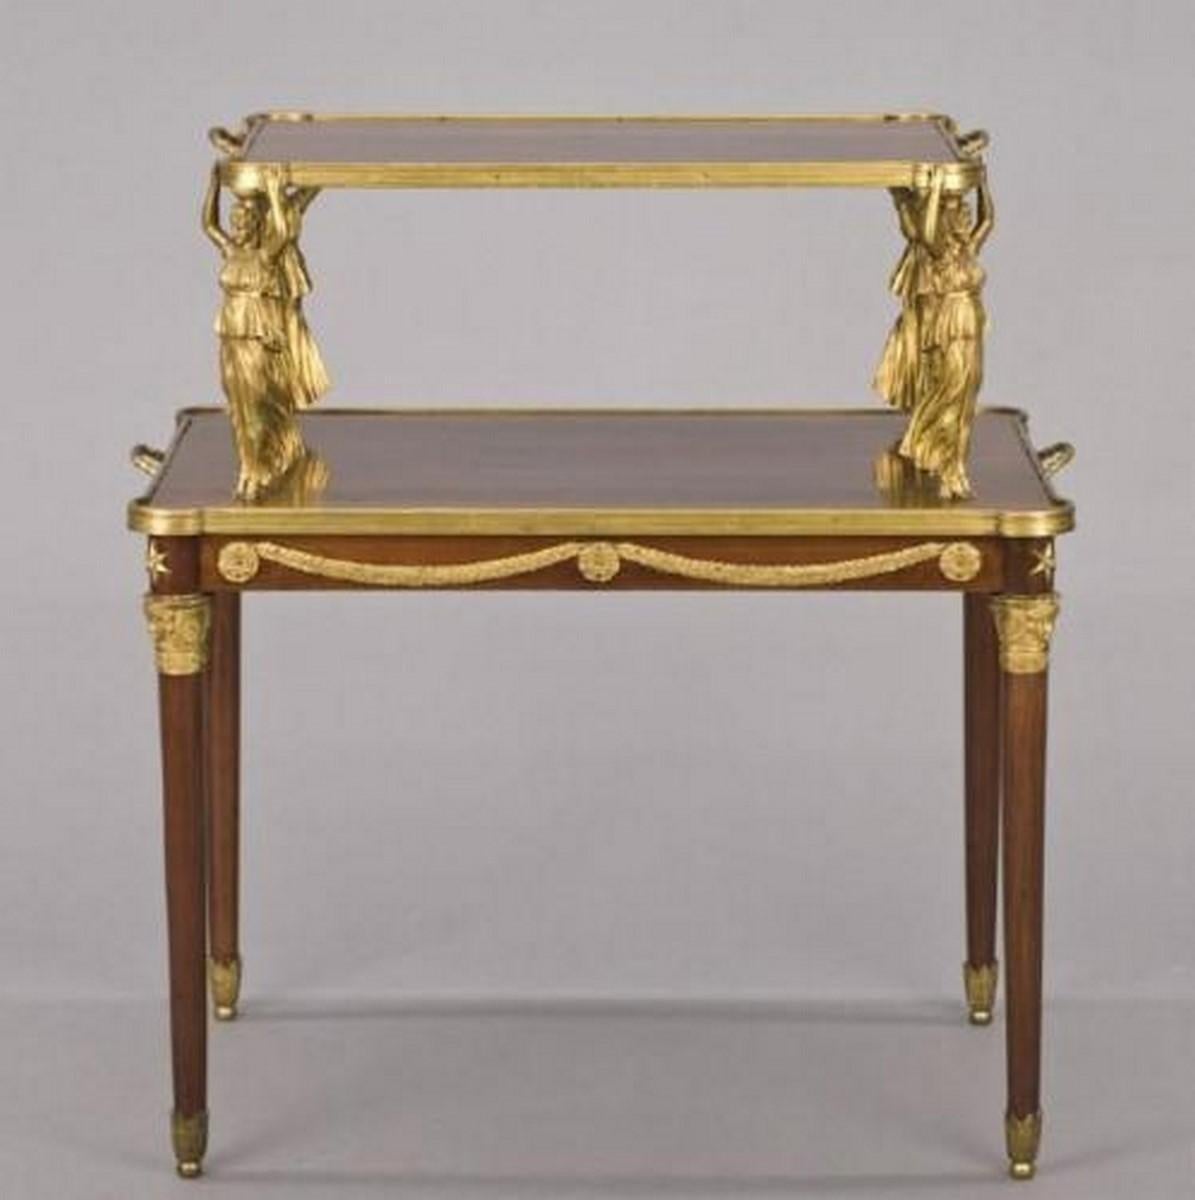 Der folgende Artikel, den wir anbieten, ist ein hervorragender französischer Empire-Tisch aus Mahagoni und vergoldeter Bronze in Museumsqualität aus dem 19. Jahrhundert, dessen Tischplatte von stehenden weiblichen Figuren auf einem Sockel mit